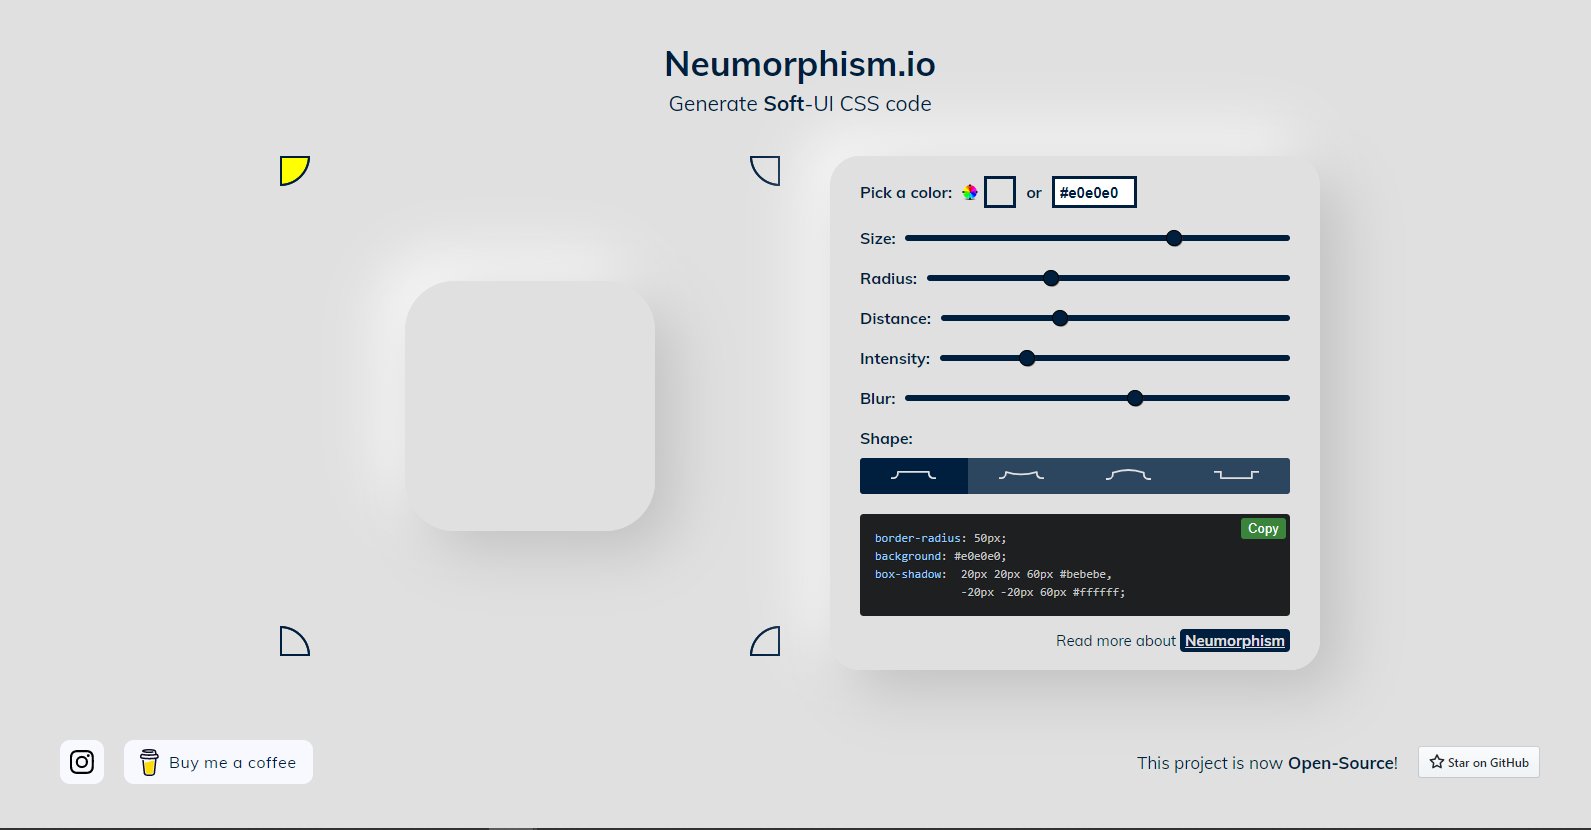 Thiết kế Neumorphic bằng mã CSS sẽ làm cho người xem bị cuốn hút với đường viền bóng và cảm giác thật mềm mại trên mỗi thành phần. Luôn hiện đại và thu hút sự chú ý, thiết kế Neumorphic sẽ khiến trang web của bạn nổi bật hơn bao giờ hết.